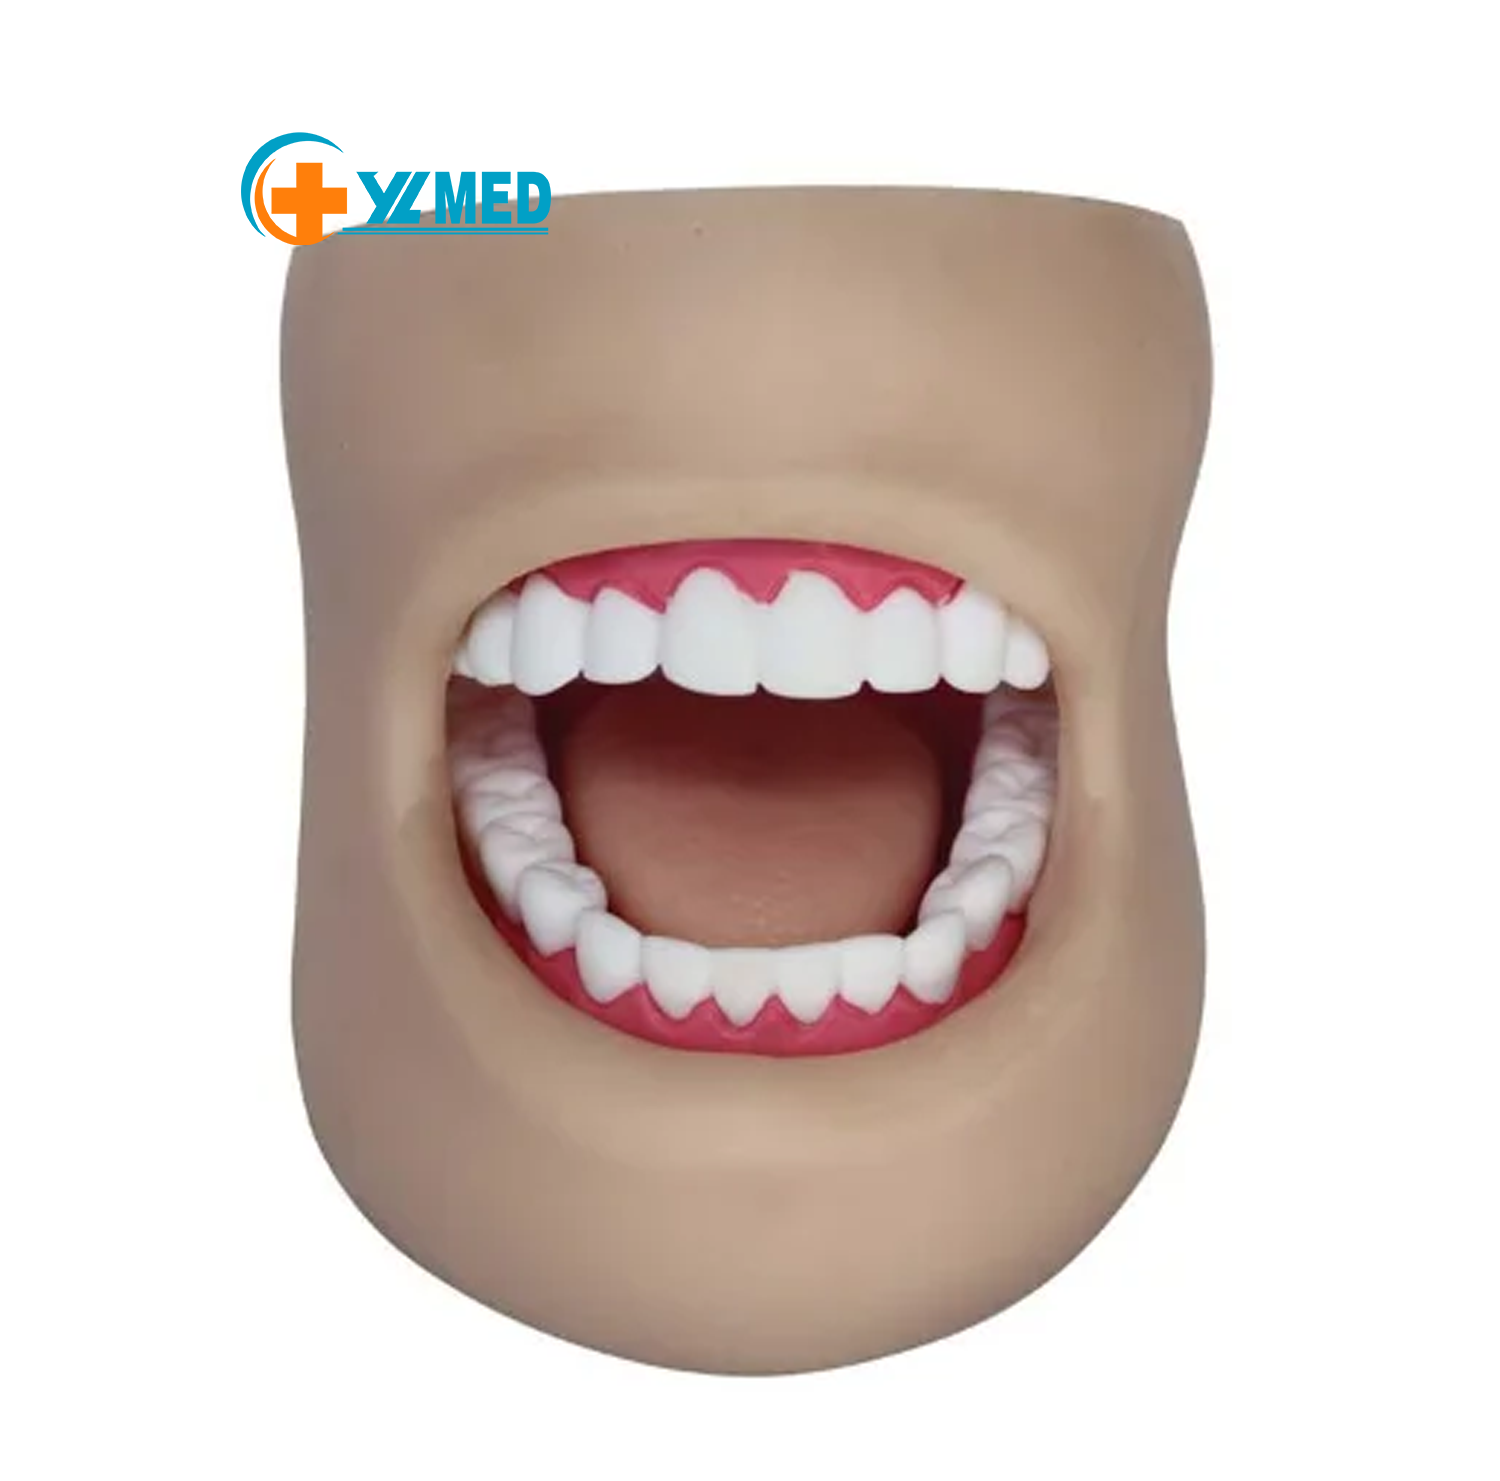 Ústní výuka Zubní model Model ústní výuky ve třídě praktického zubního modelu s 28 zuby a tvářemi